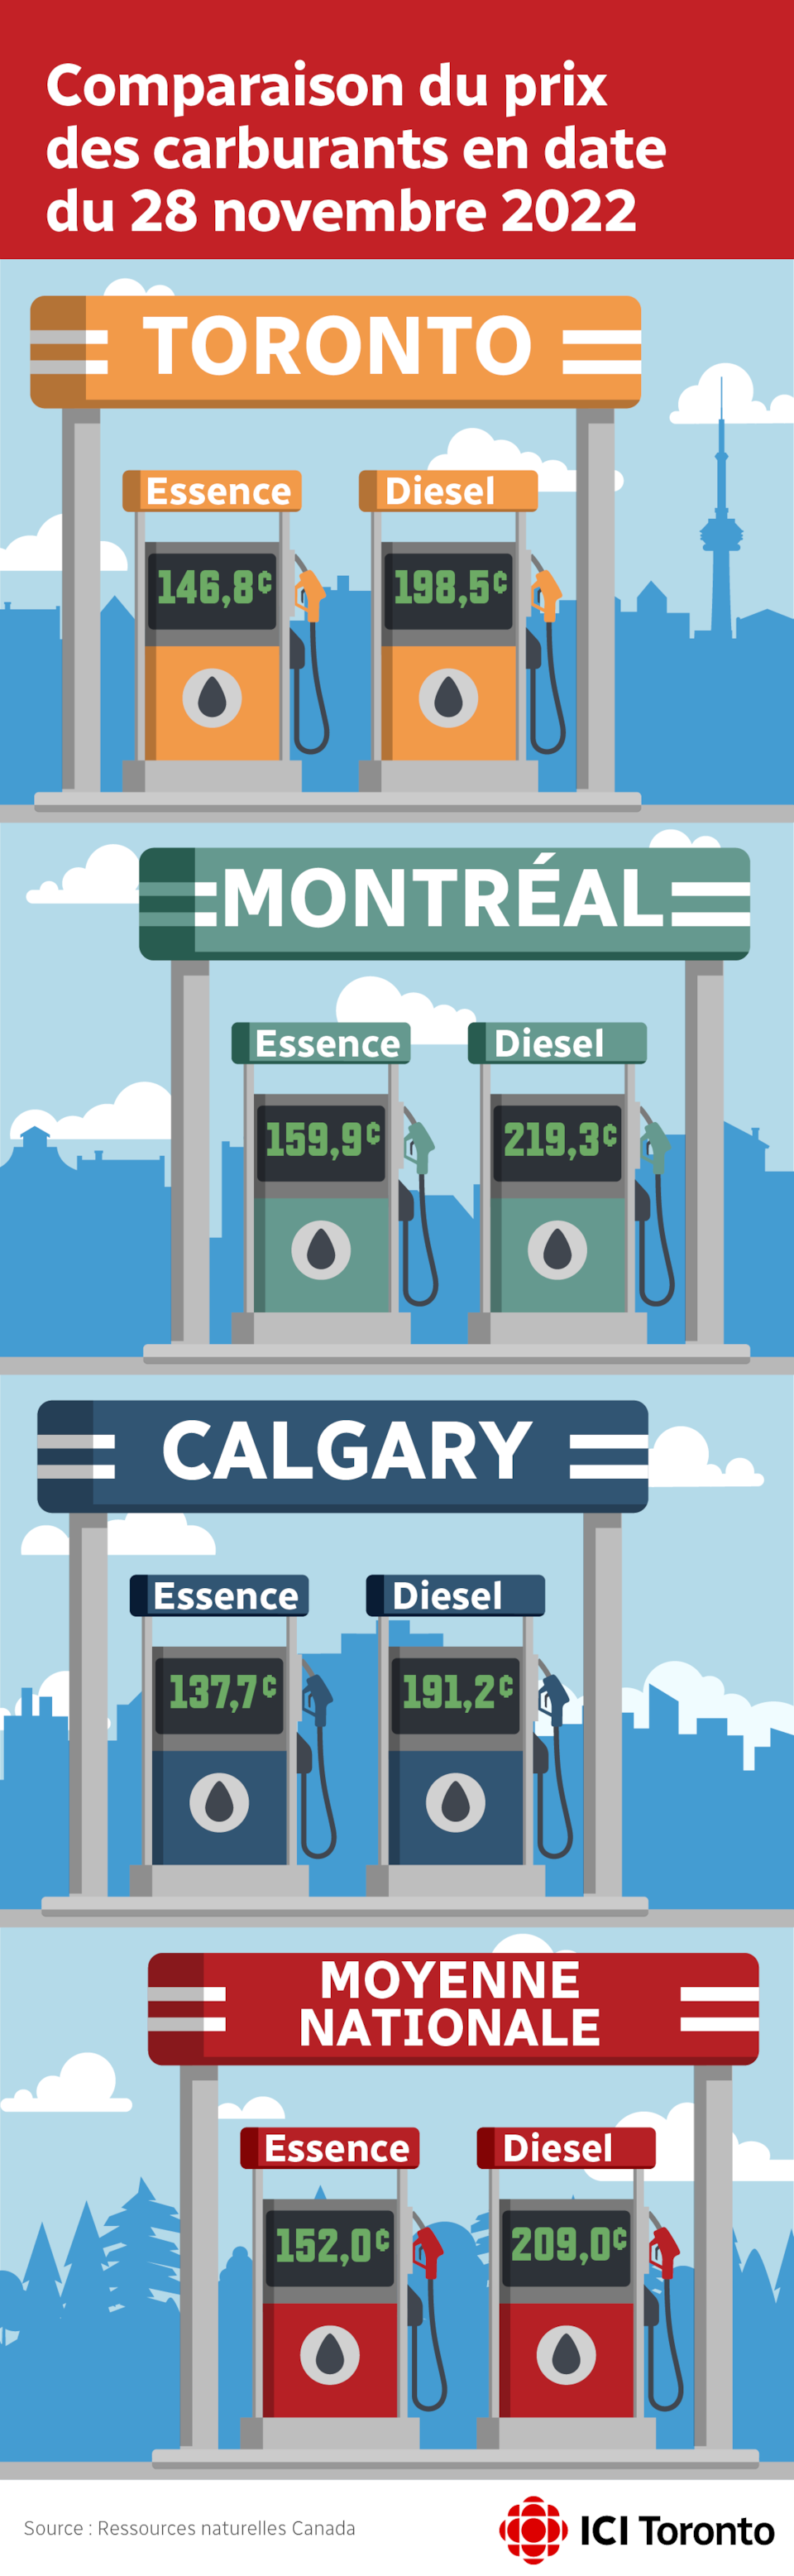 Comparaison du prix à la pompe de l'essence et du diesel en date du 28 novembre 2022 (en sous par litre)
Toronto : Essence - 146,8 ¢ Diesel - 198.5 ¢
Montréal : Essence - 159.9 ¢  Diesel - 219.3 ¢
Calgary : Essence -137.7 ¢ Diesel - 191.2 ¢
Moyenne canadienne  : Essence 152.0 ¢ Diesel - 209.0 ¢